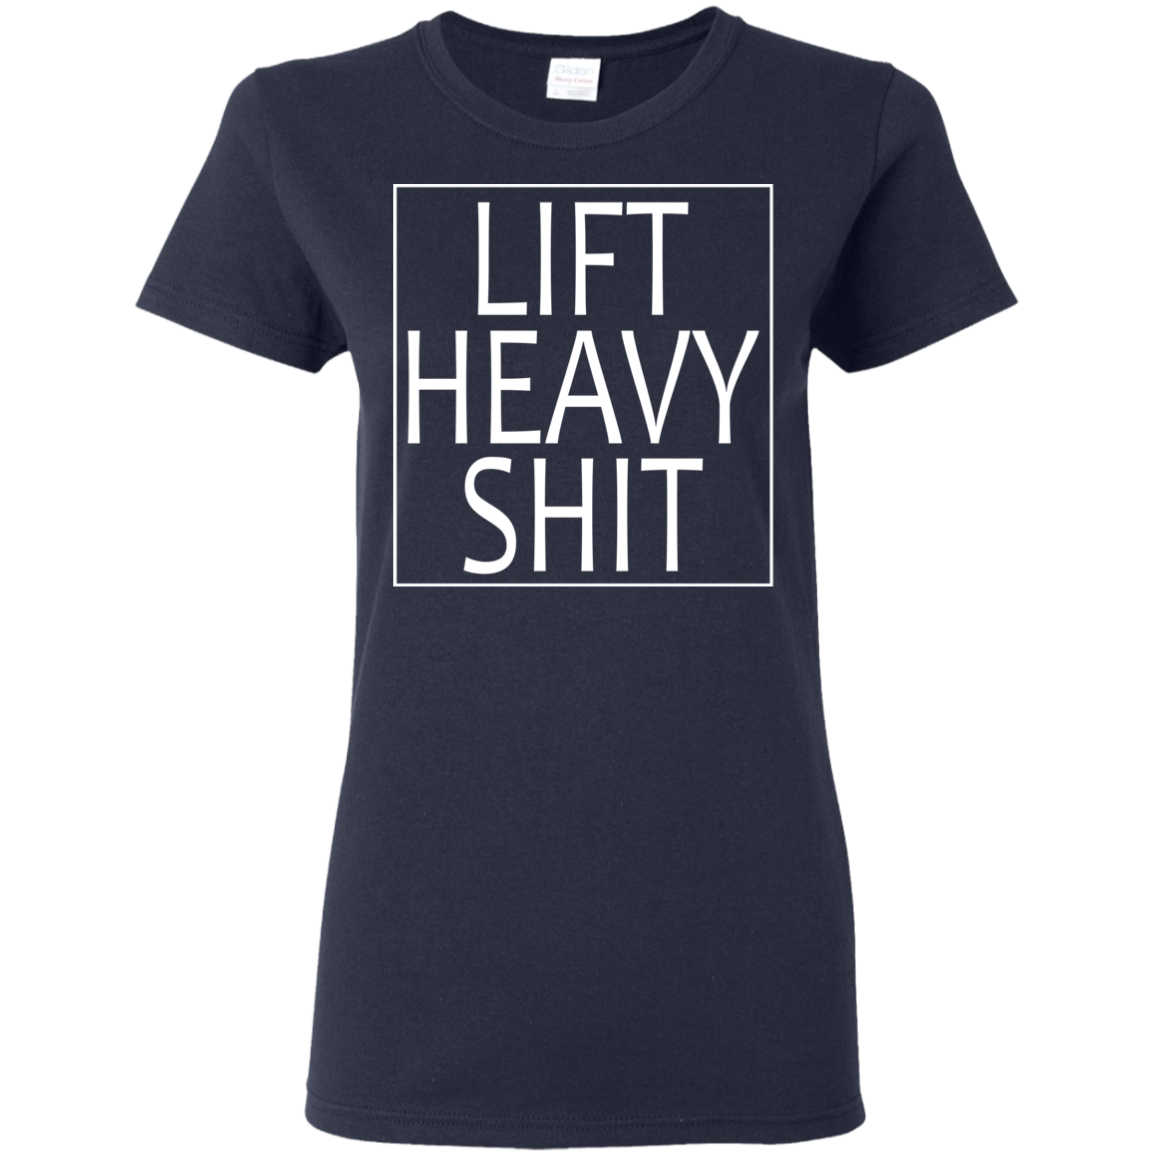 Gym Girl Lift Heavy Shit Tank-Top, T-Shirt 2019